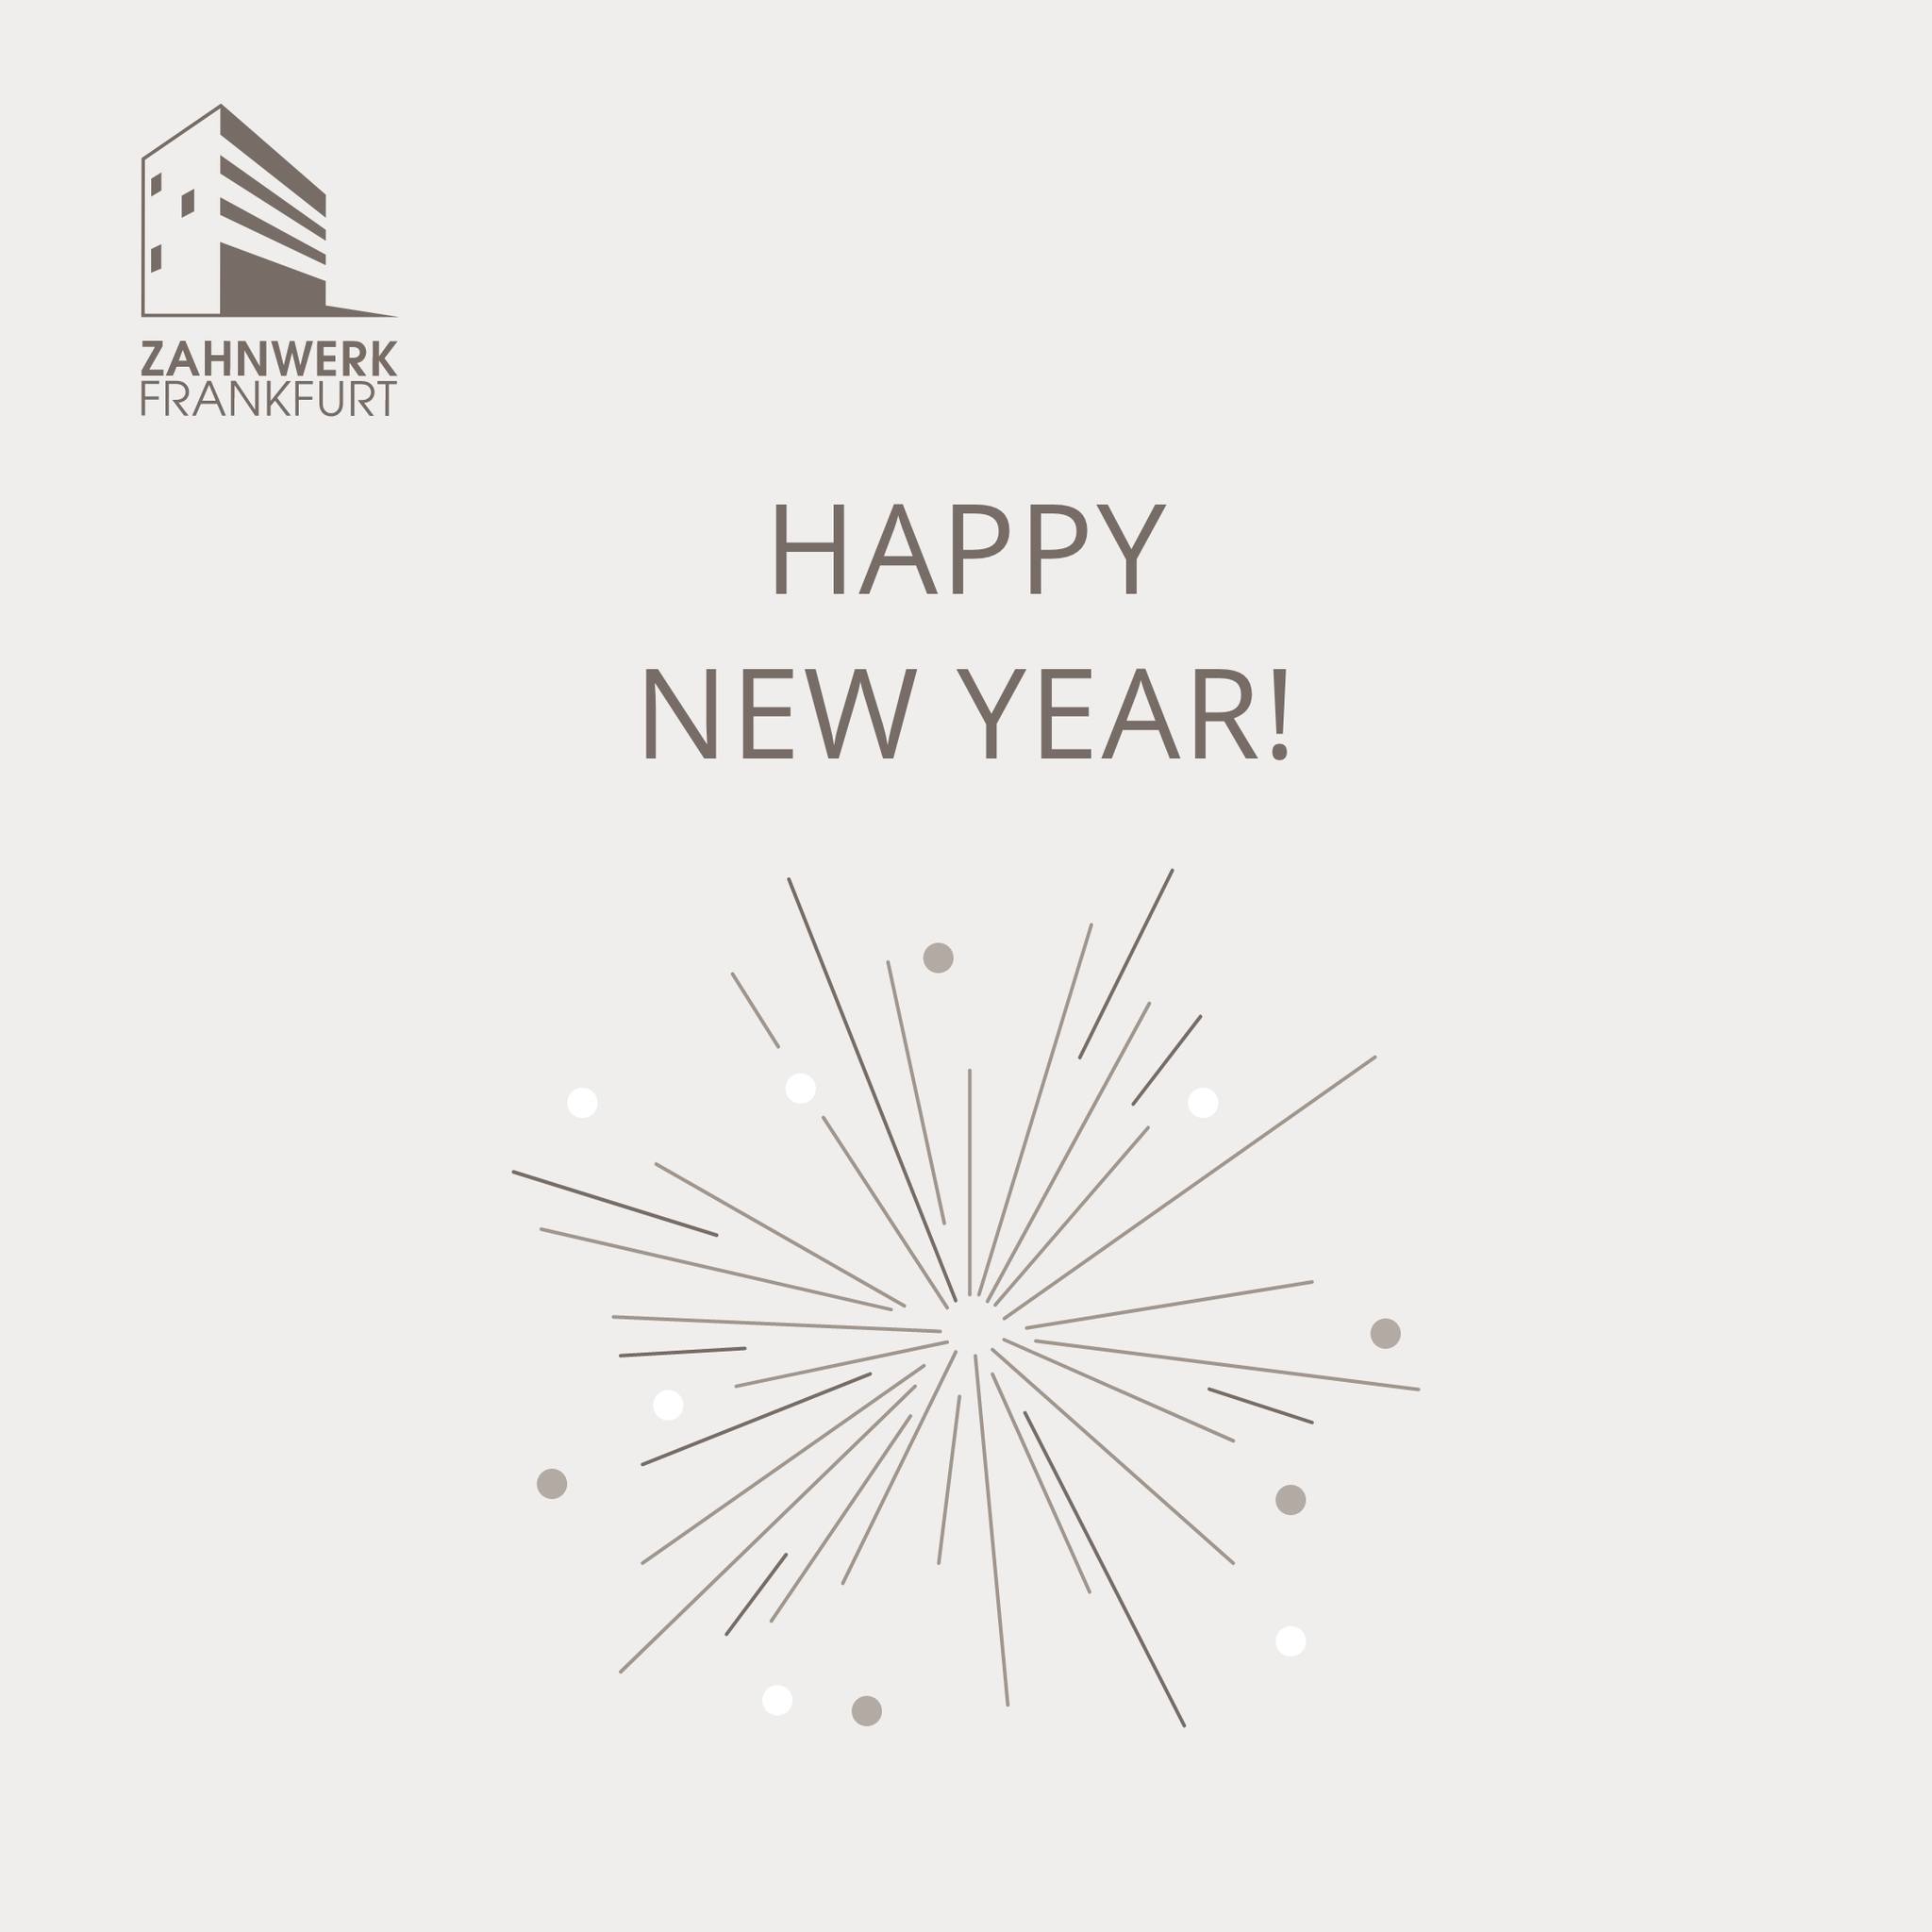 Wir wünschen Dir & Deiner Familie ein frohes neues Jahr ! Wir geben auch in diesem Jahr für Euch & Eure Mund- & Zahngesundheit unser Bestes und haben bereits einige spannende Fort- und Weiterbildungen auf der Agenda! Hast auch Du schon Deine Ziele für dieses Jahr gesteckt? Schreib doch gerne in die Kommentare, wo Du Dich in diesem Jahr weiterbilden möchtest! Wir sind gespannt! #newyear #2024 #frohesneues #neujahr #celebration #fortbildung #newyearnewme #weiterbildung #ausbildung #karriere #zahnmedizin